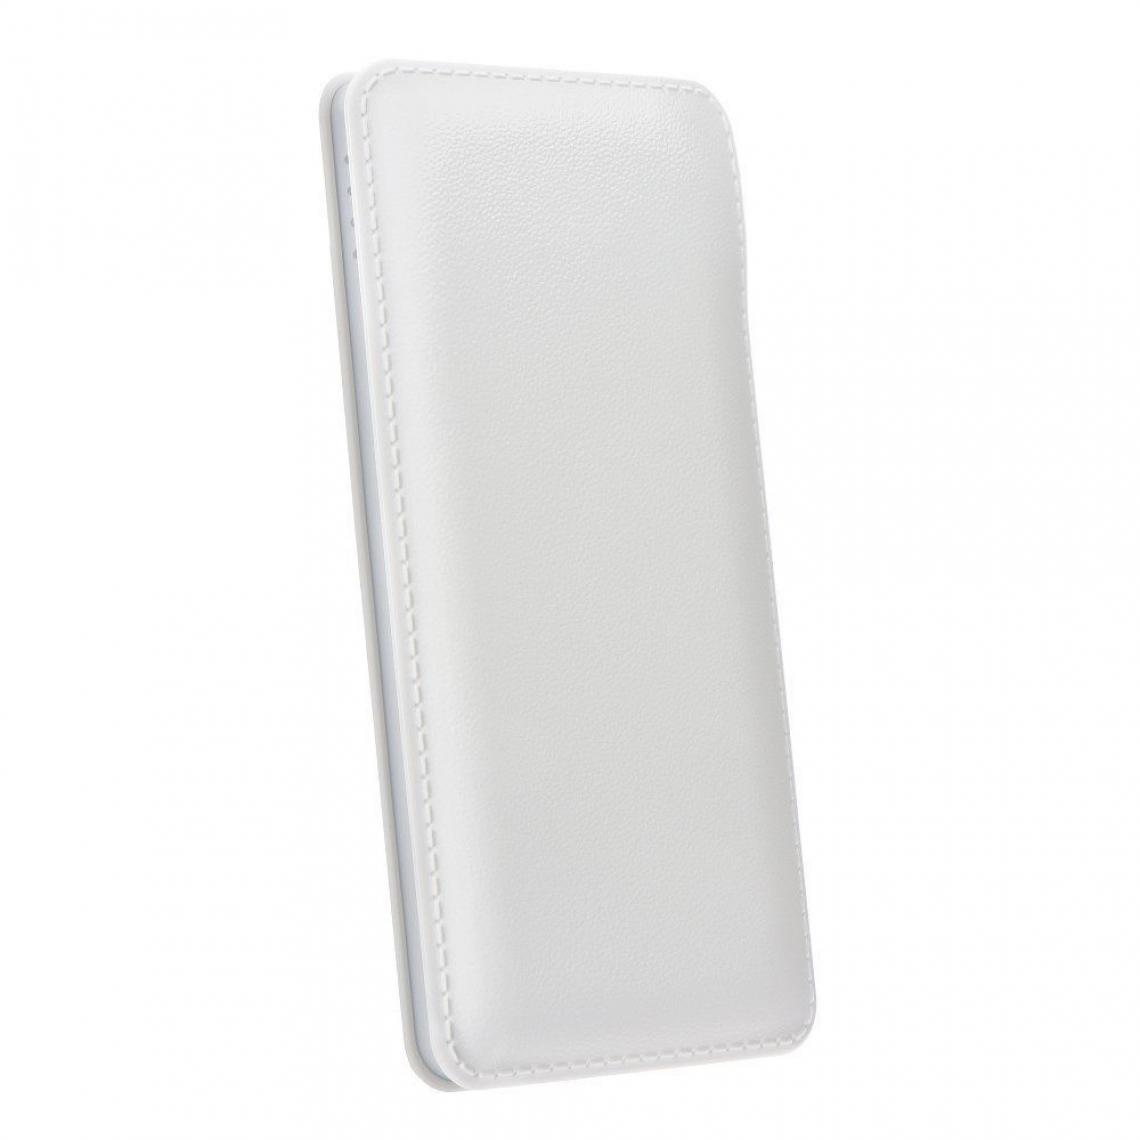 Ozzzo - Chargeur batterie externe 30000 mAh powerbank ozzzo blanc pour comparer prix Kenxinda W50 - Autres accessoires smartphone